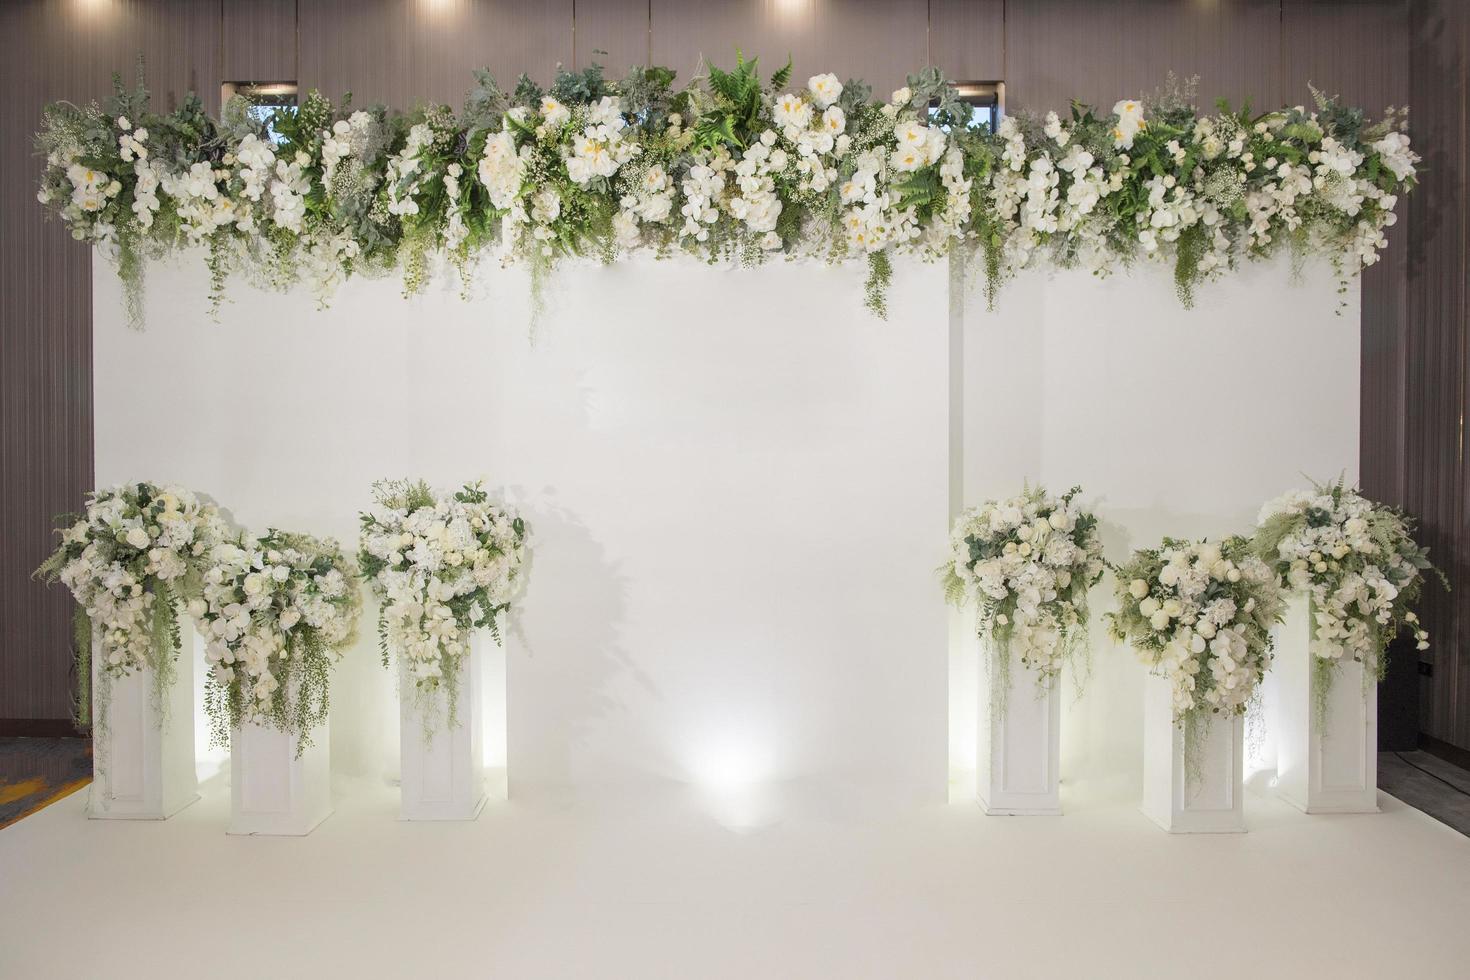 telón de fondo de boda con flores y decoración de boda foto